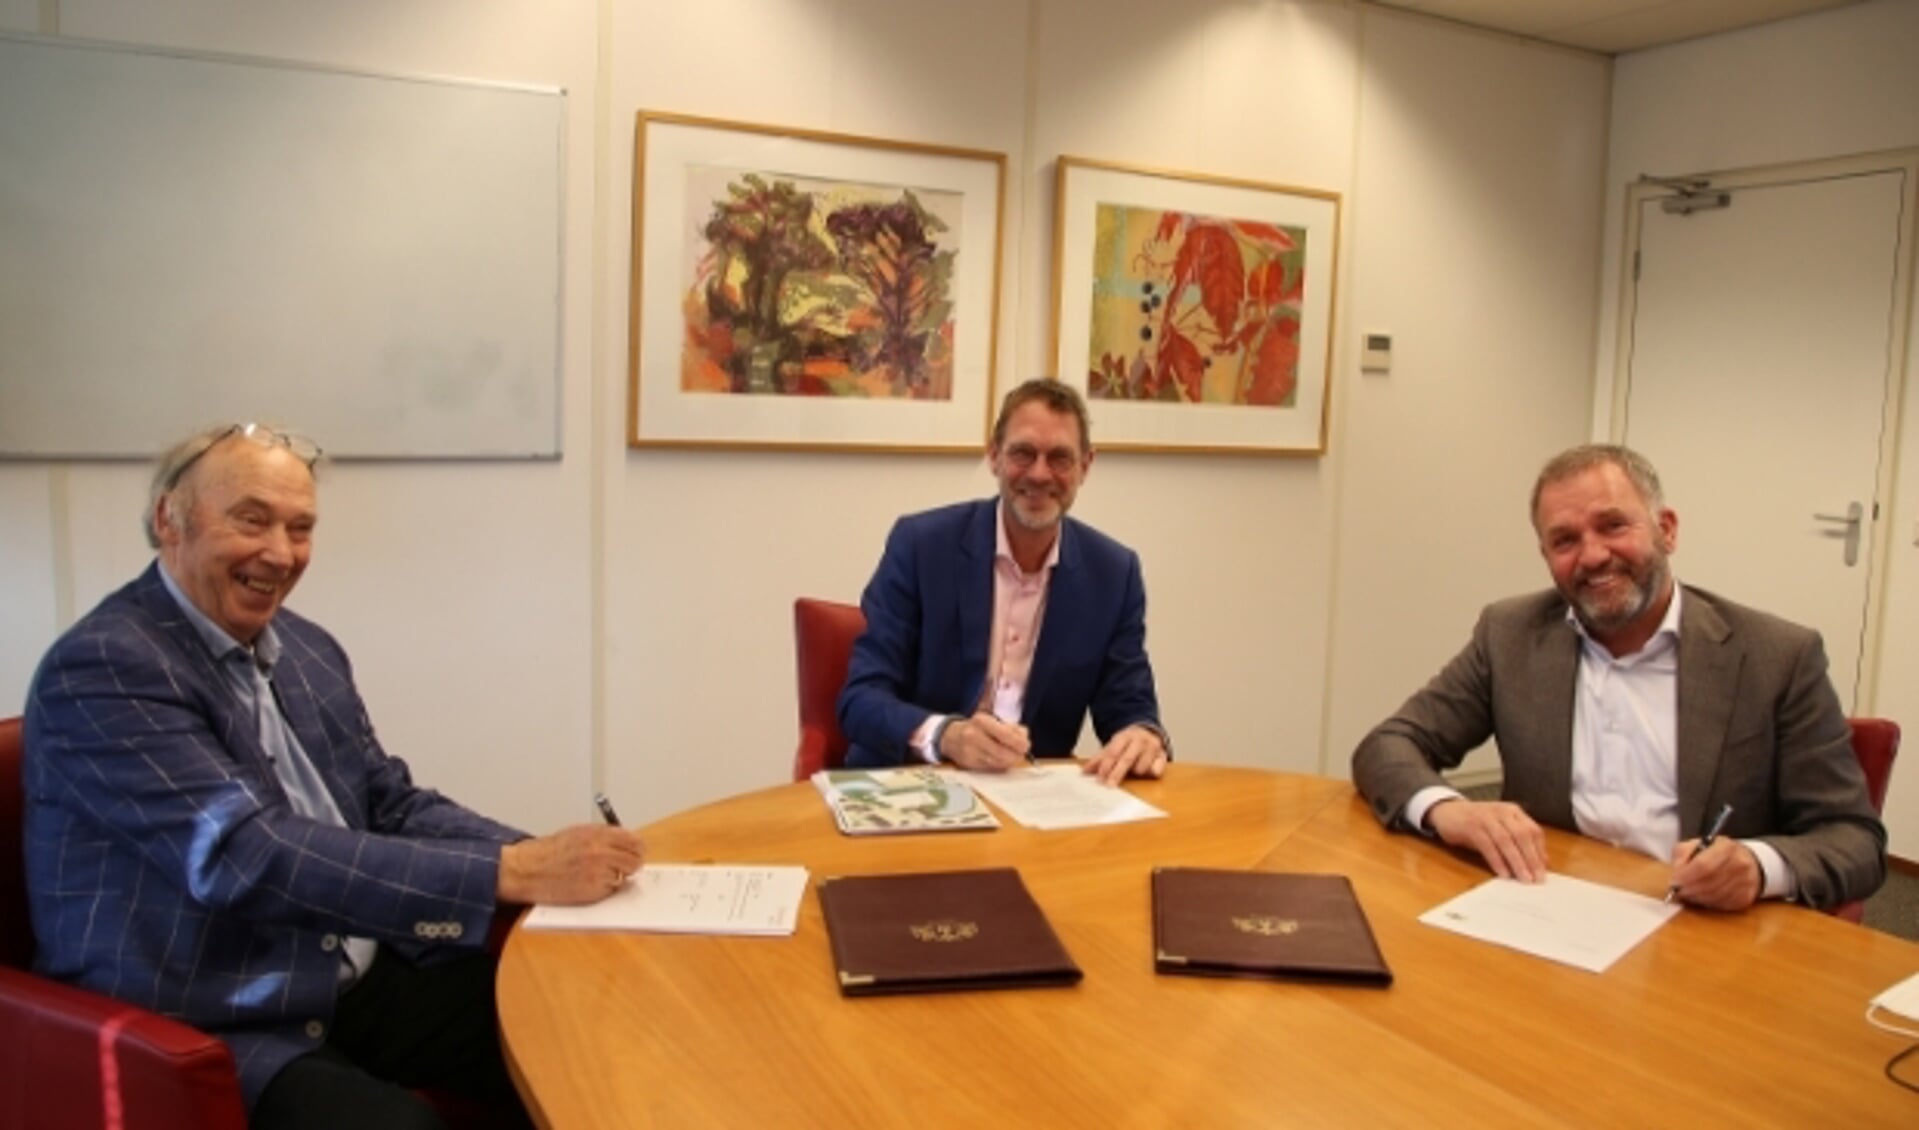 De handtekeningen werden gezet door de directeuren André Groen (links) en Harry van Zandwijk (rechts) namens de ontwikkelende partij en wethouder Bob Duindam.